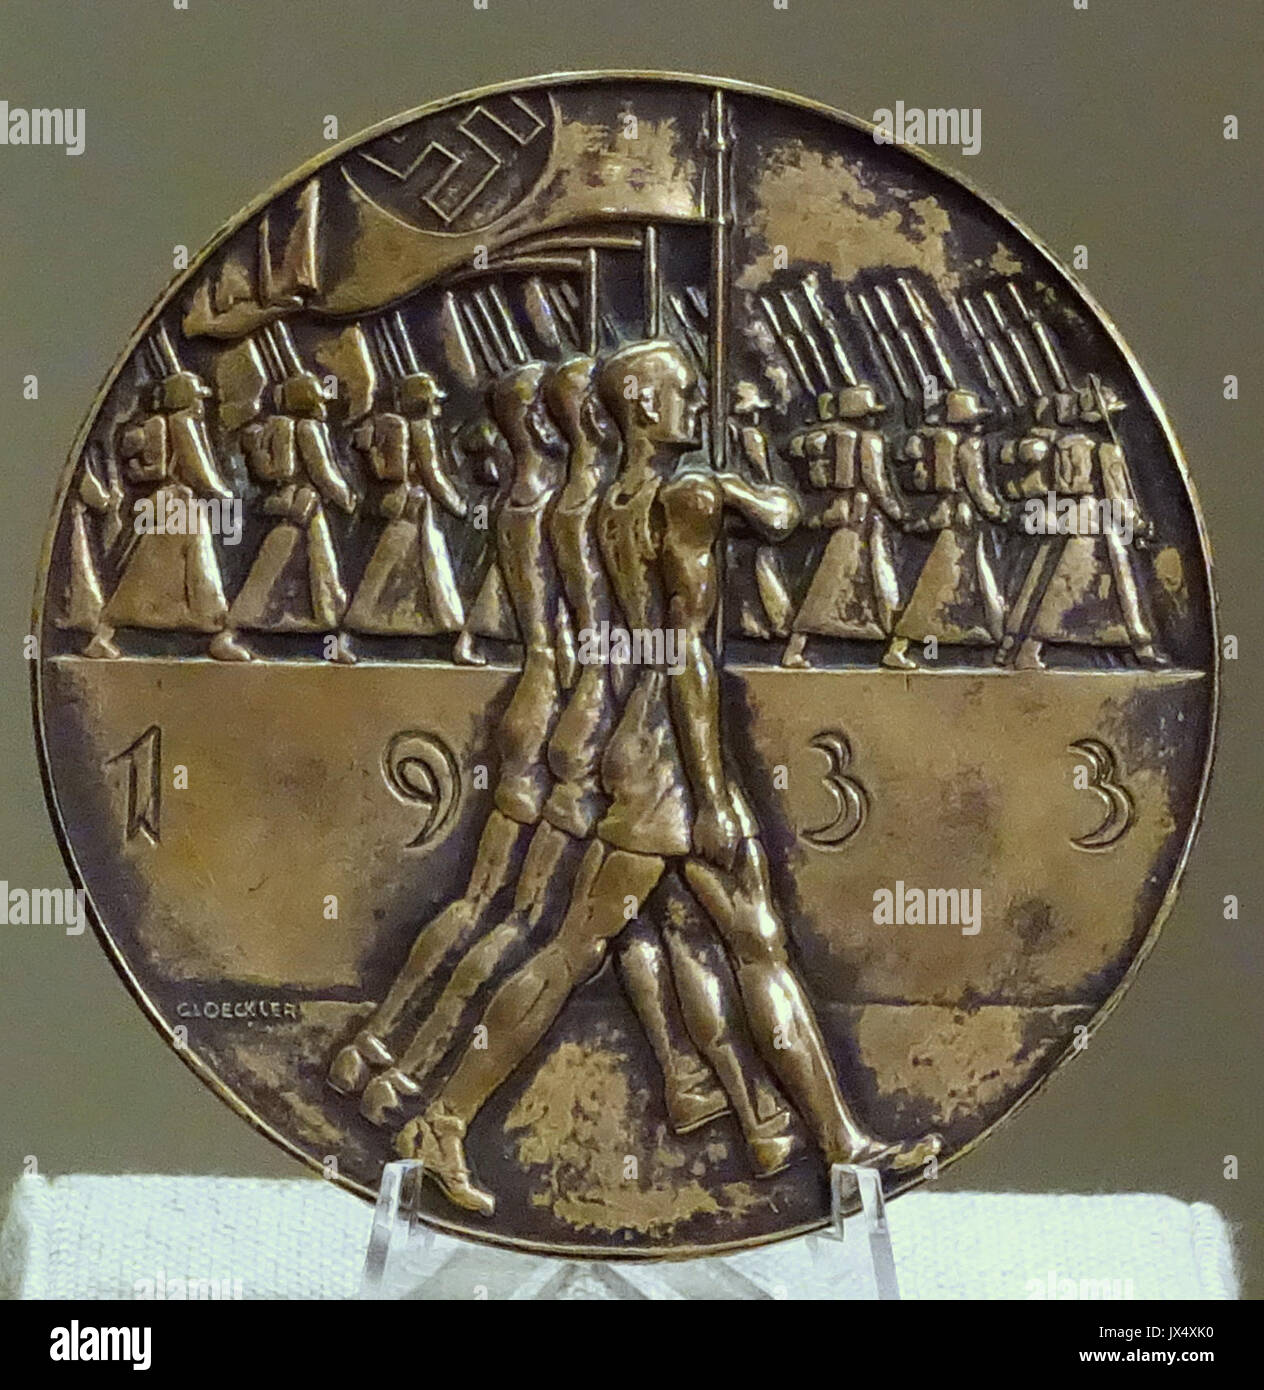 Médaille sportive par Oskar Gloeckler, Cologne, Allemagne, août 1933, bronze Spurlock Museum, UIUC DSC06117 Banque D'Images